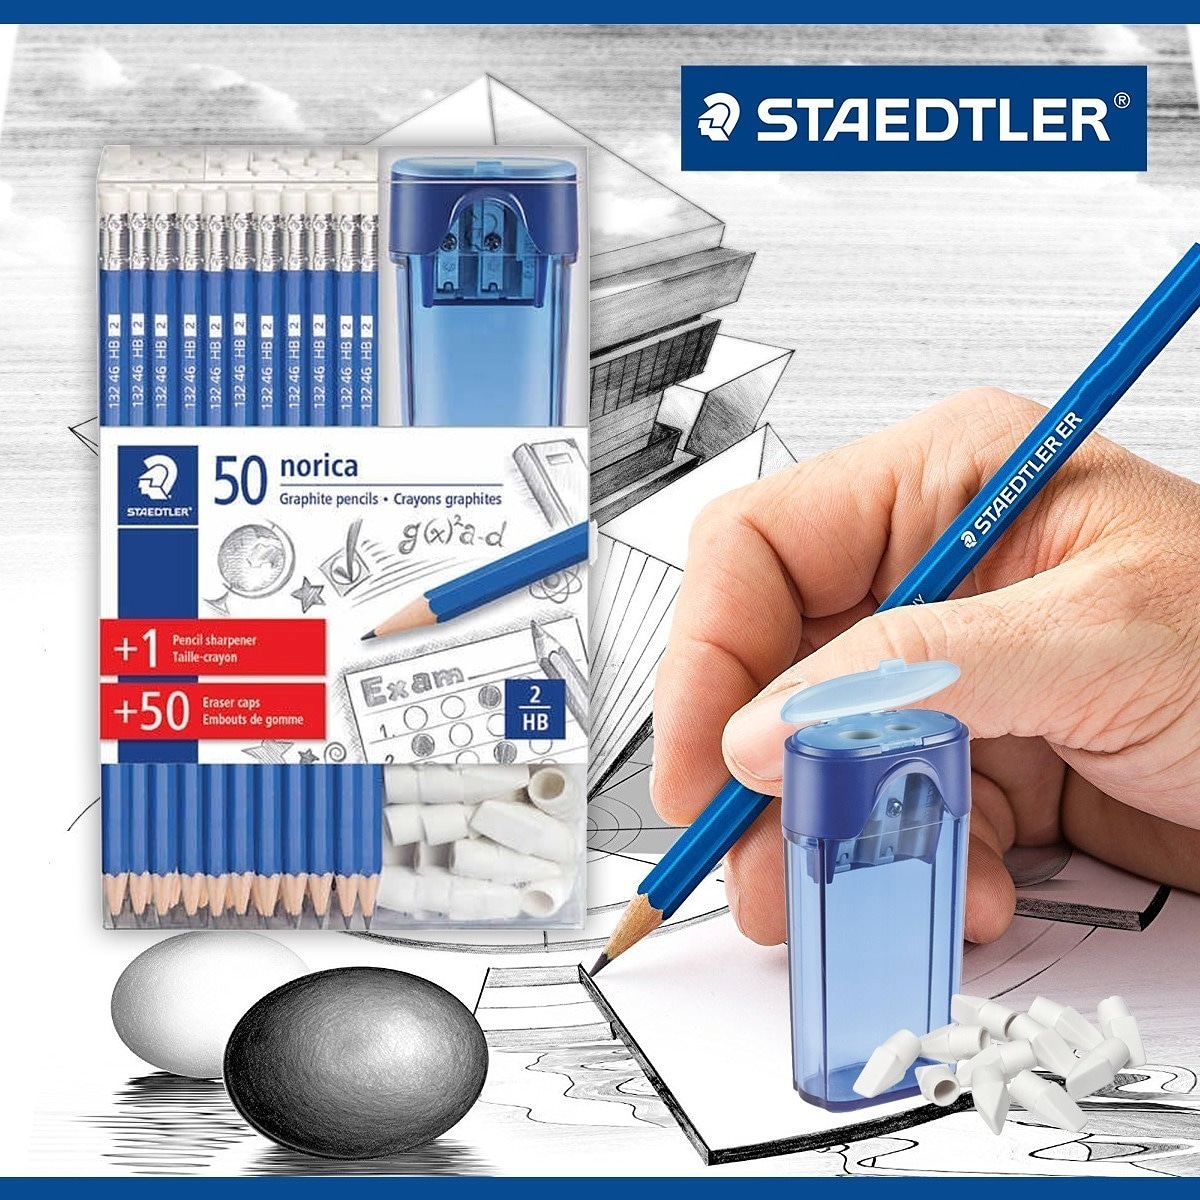 Cs Stationery Staedtler 鉛筆套裝 Staedtler 鉛筆套裝包括 50枝hb鉛筆 50個擦膠頭 套上筆頭 Staedtler 鉛筆刨1個staedtler 鉛筆套裝 特價 105 到期日 9月中